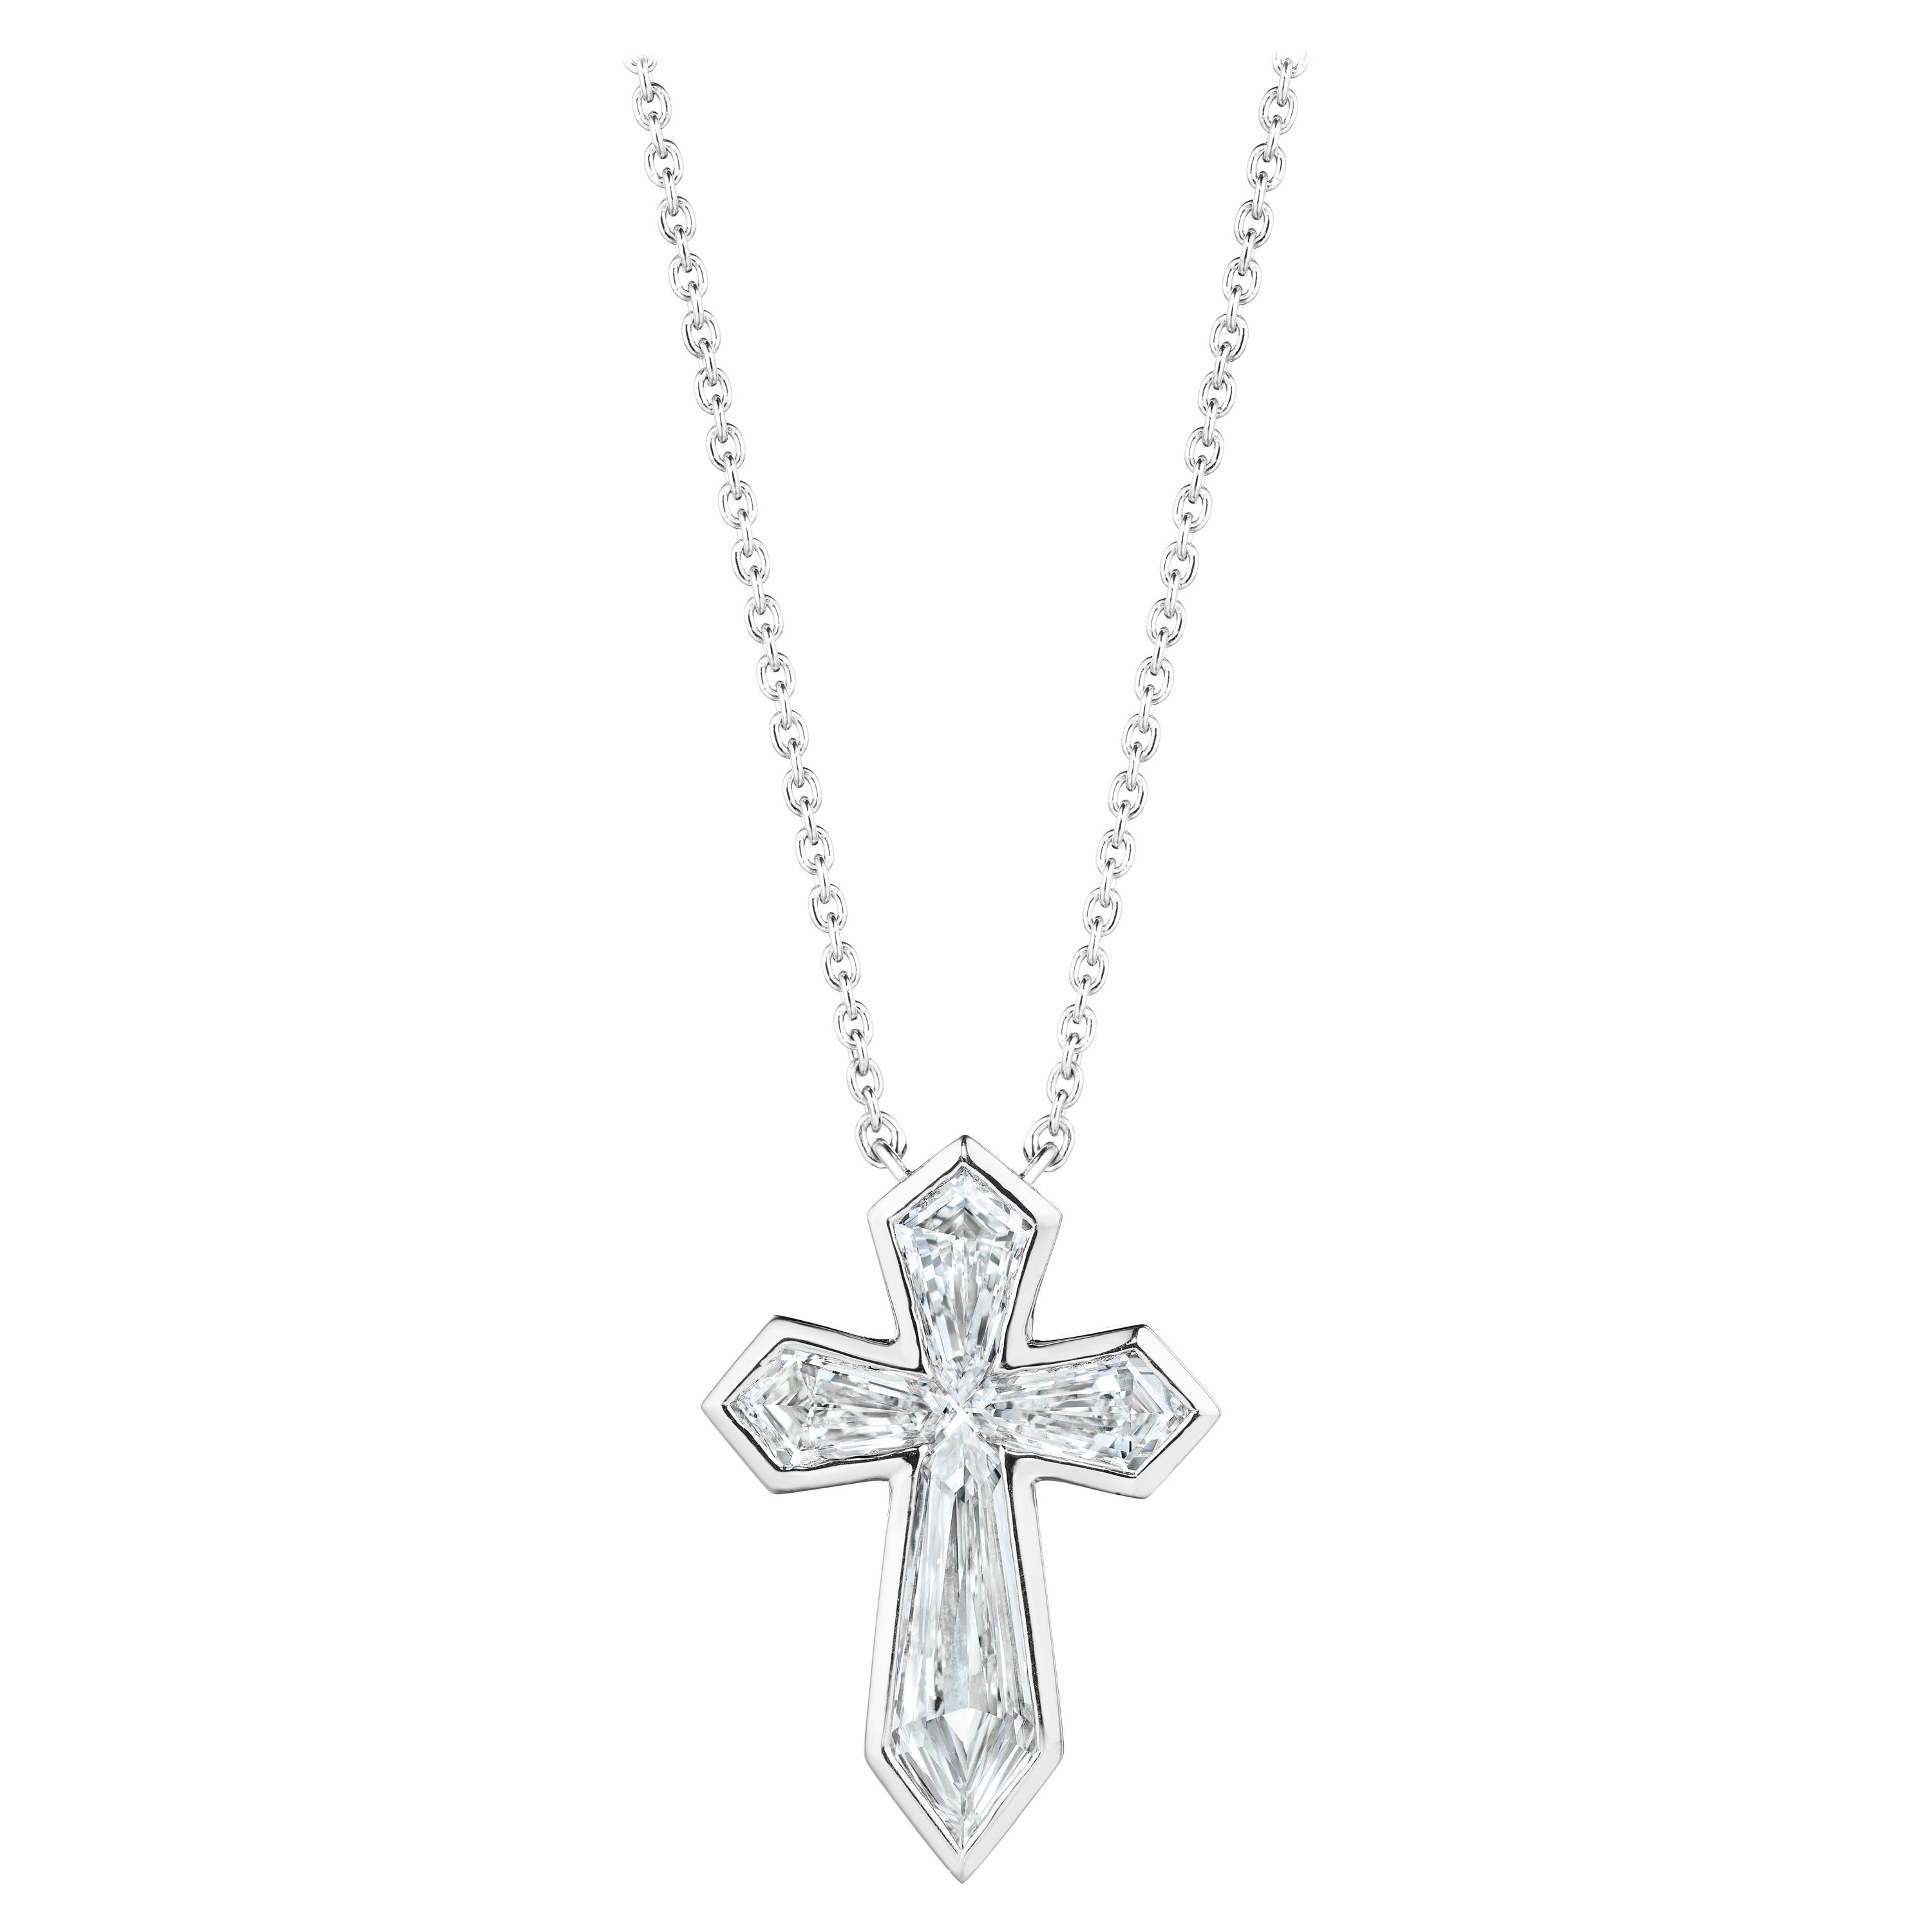 Unique 1.62 Carat Diamond Kite Cross in Platinum Bezel For Sale